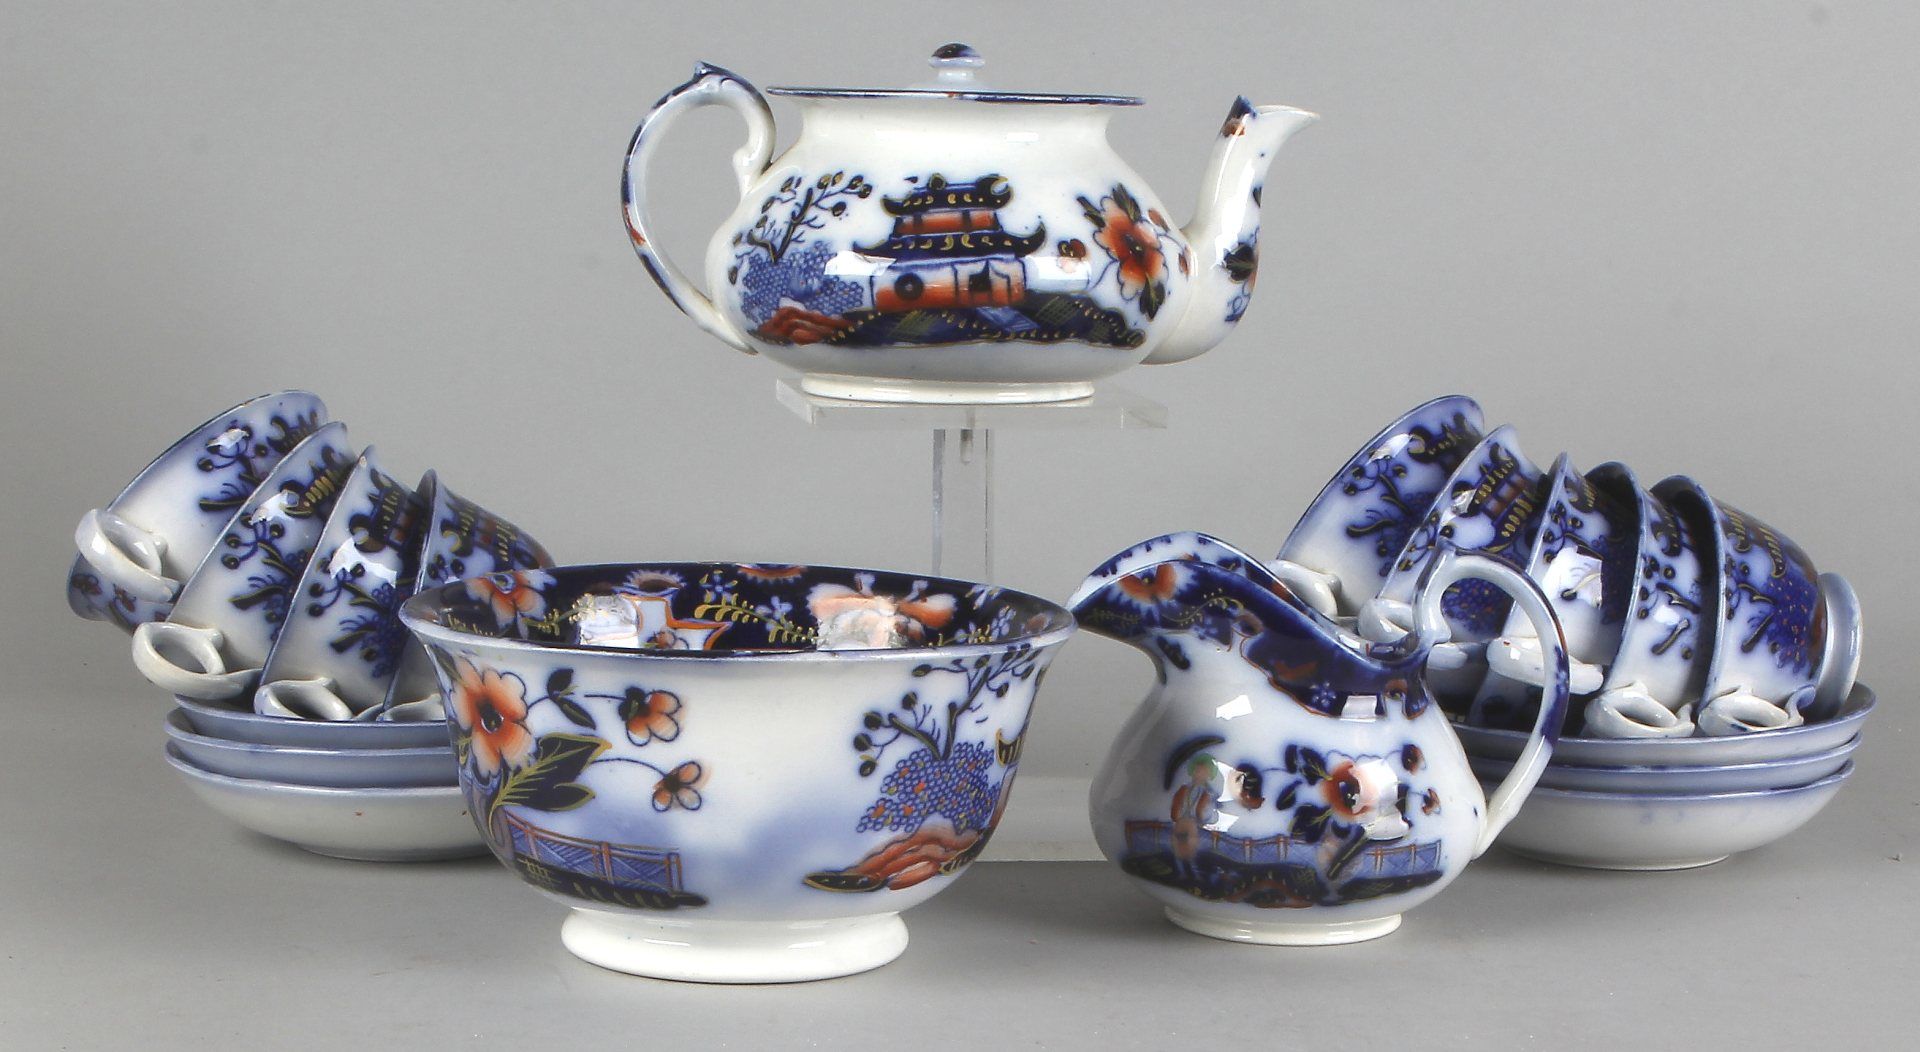 Nineteenth century ceramic dinnerware, tea pot, kastkom, six cups and saucers, creamer, three